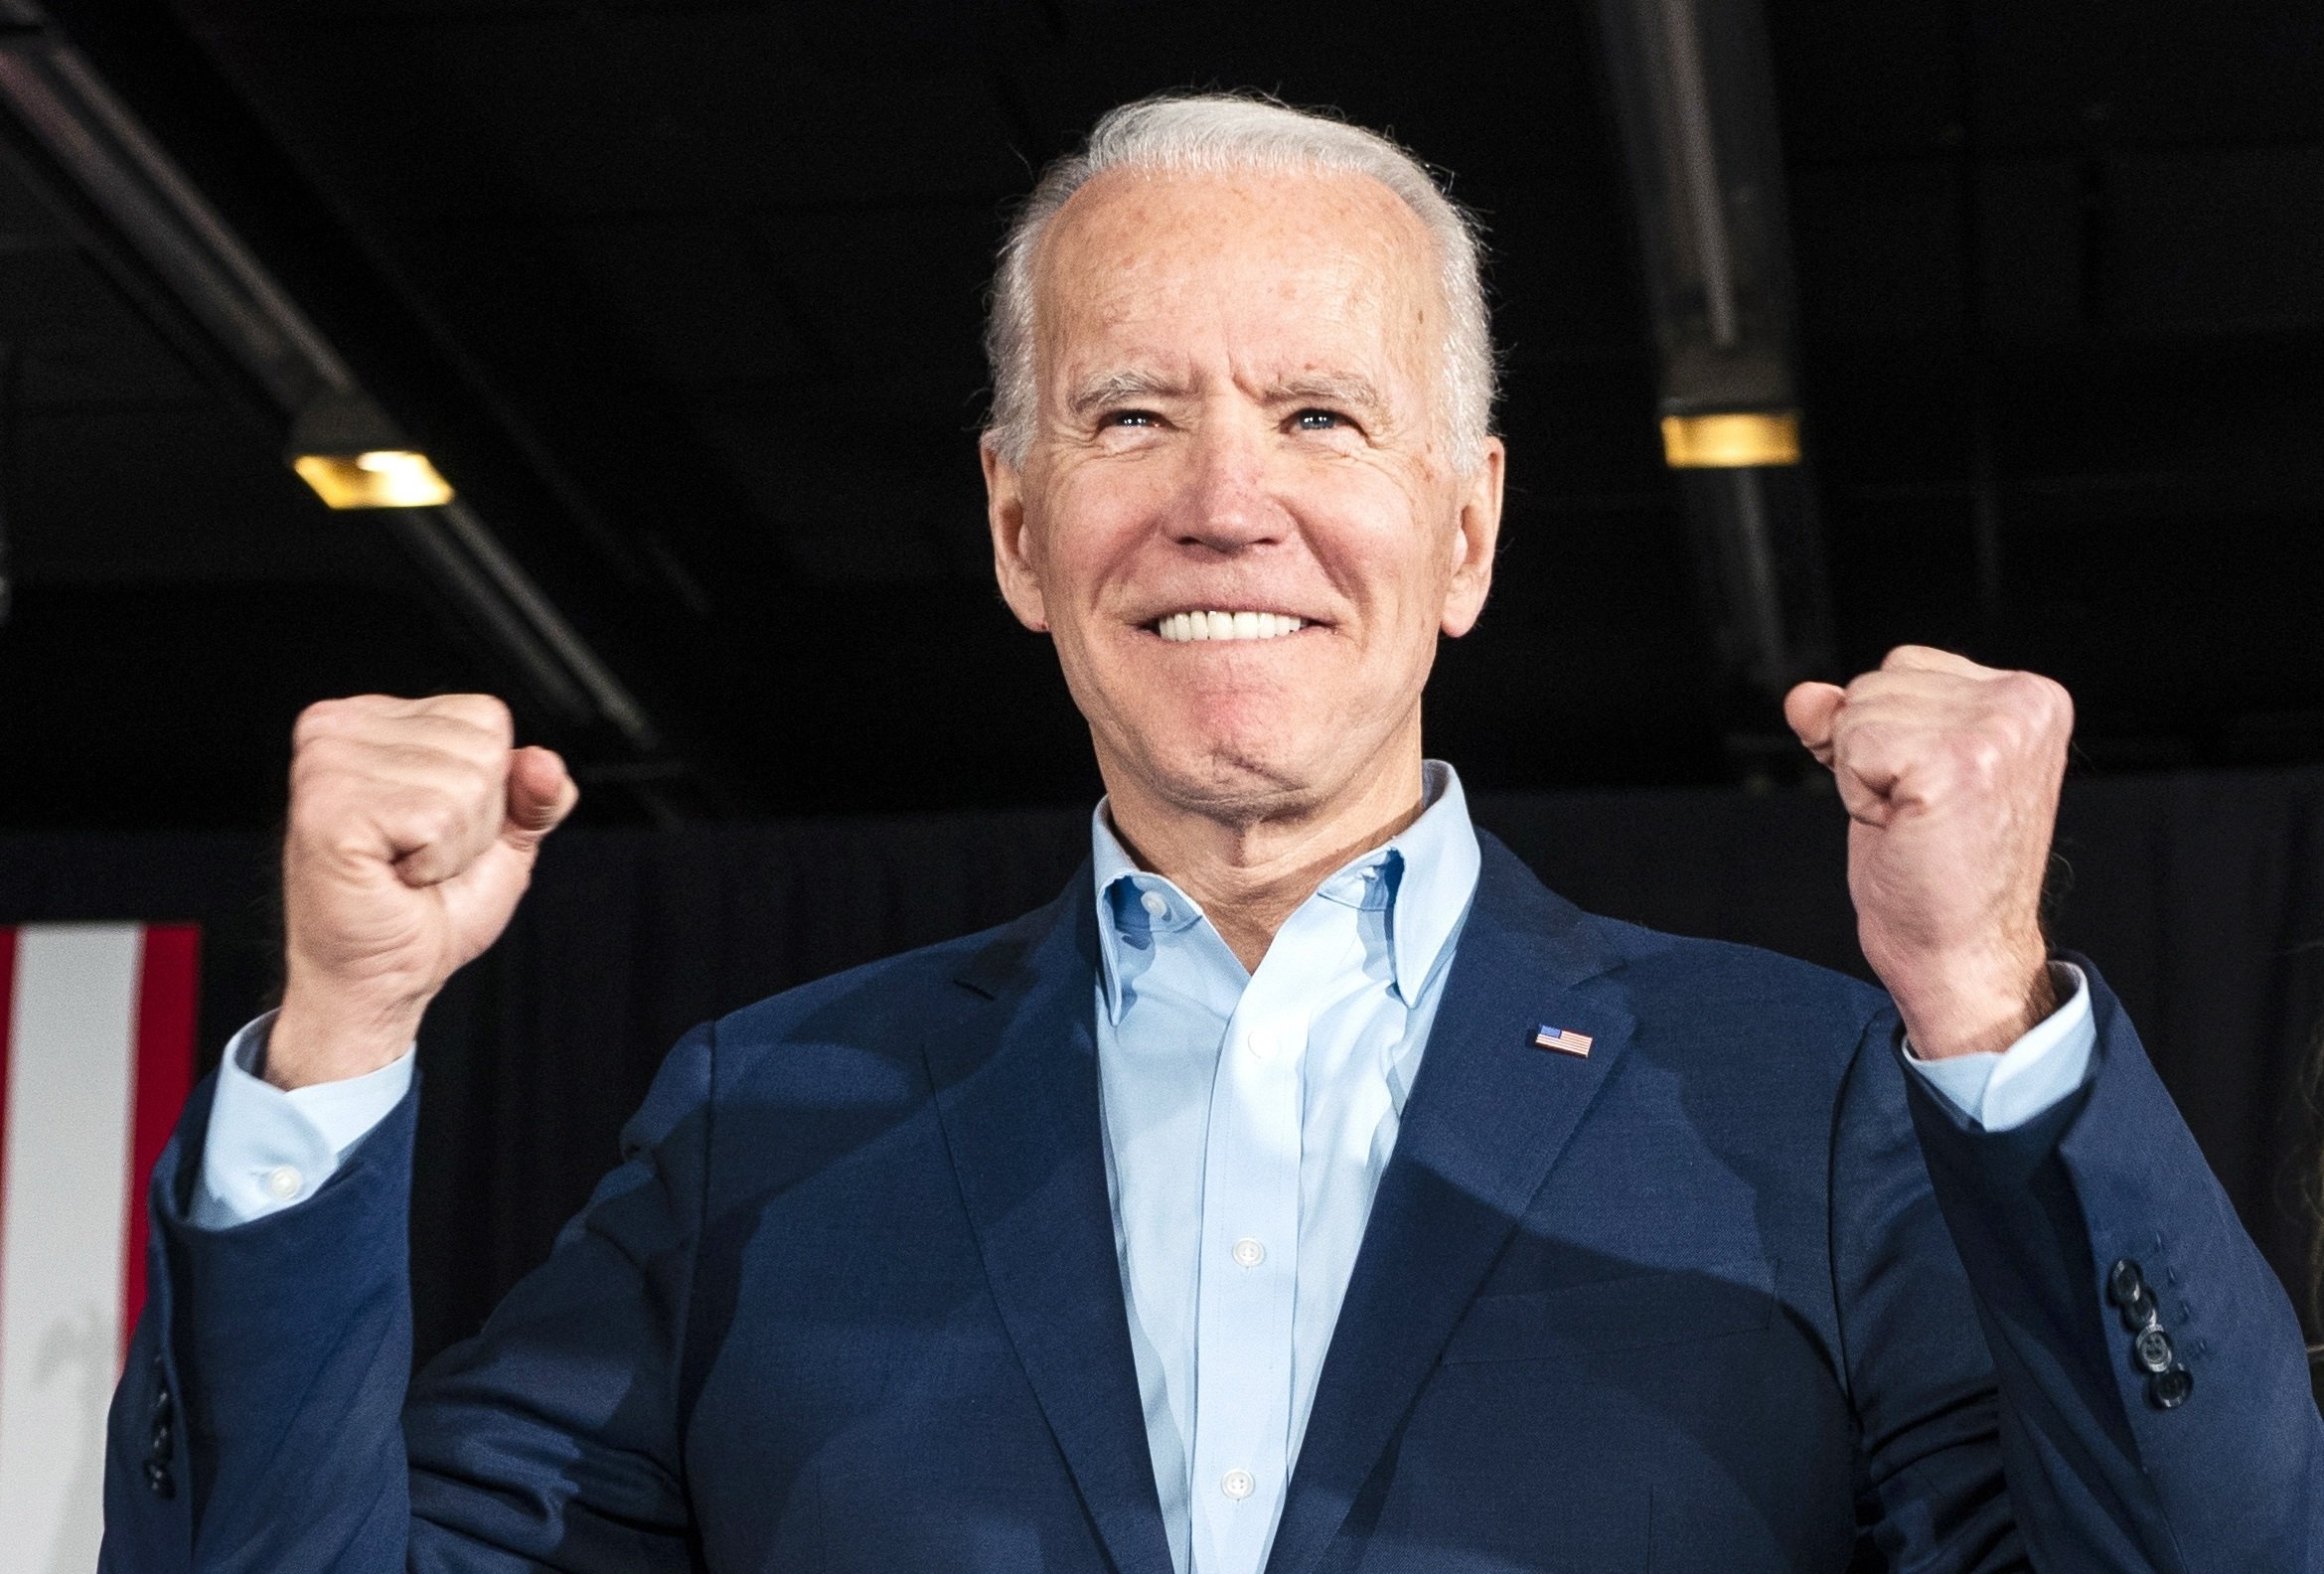 El Col·legi Electoral confirma Biden com a president electe dels EUA